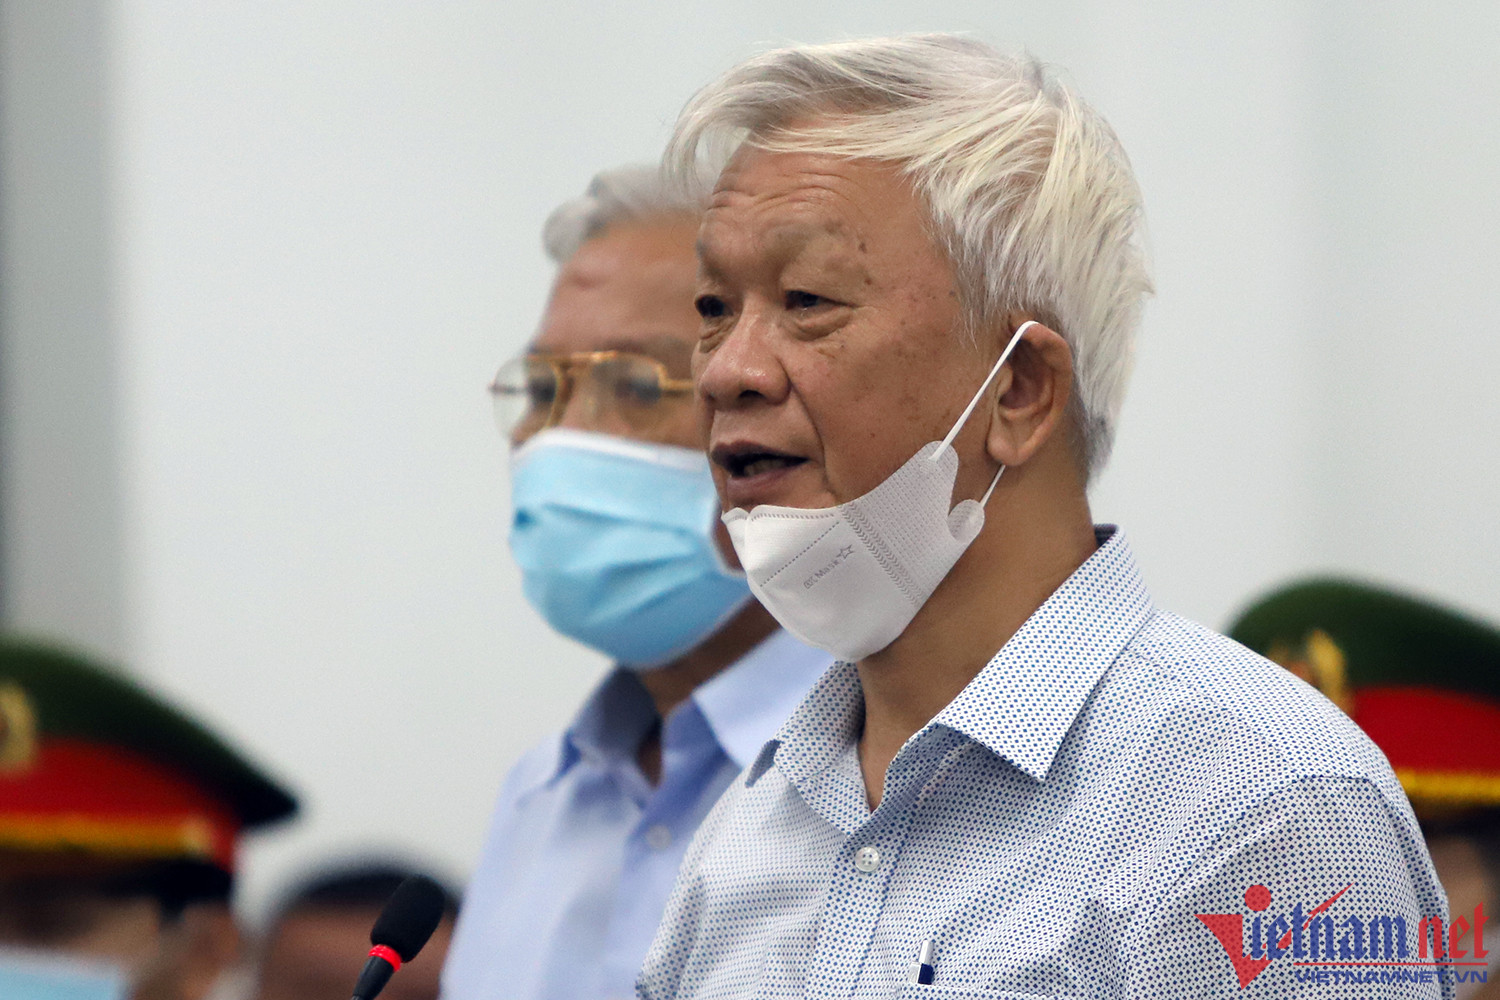 Hai cựu chủ tịch tỉnh Khánh Hòa bị đề nghị 6-8 năm tù